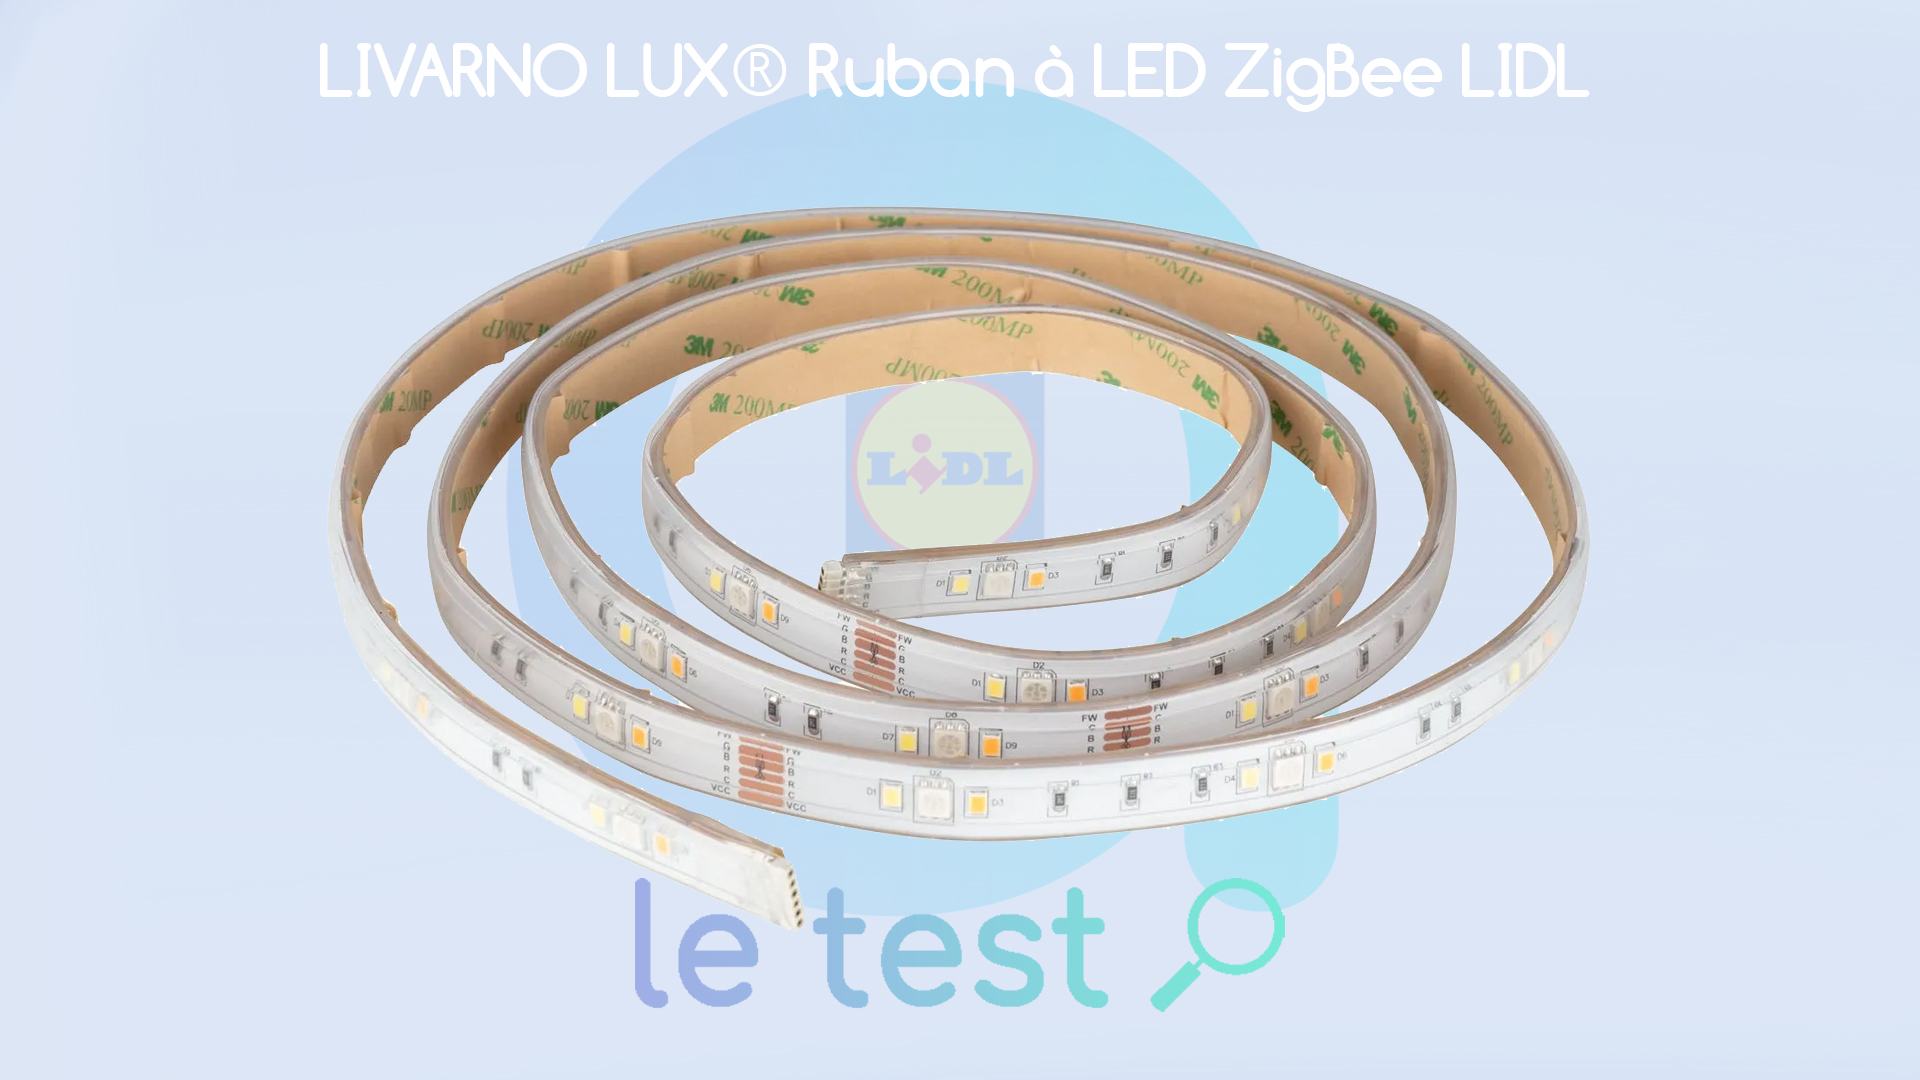 Test Ruban LED Livarno Lux Lidl à bande : Alexiens Les la –